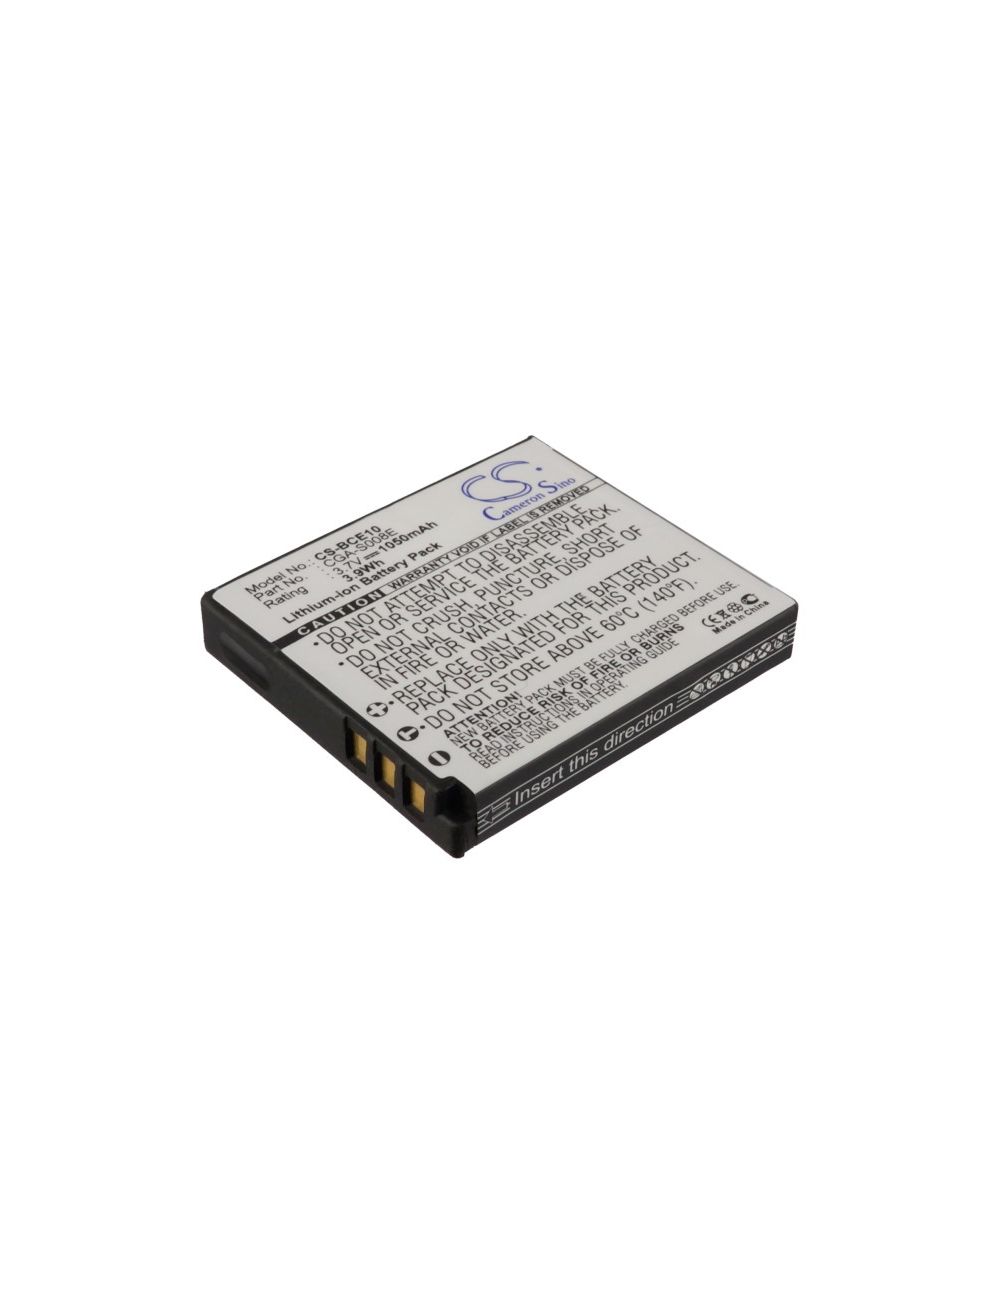 Batería Panasonic DMW-BCE10E, VW-VBJ10, CGA-S008 3,7V 1050mA - CS-BCE10 -  - 4894128005988 - 1